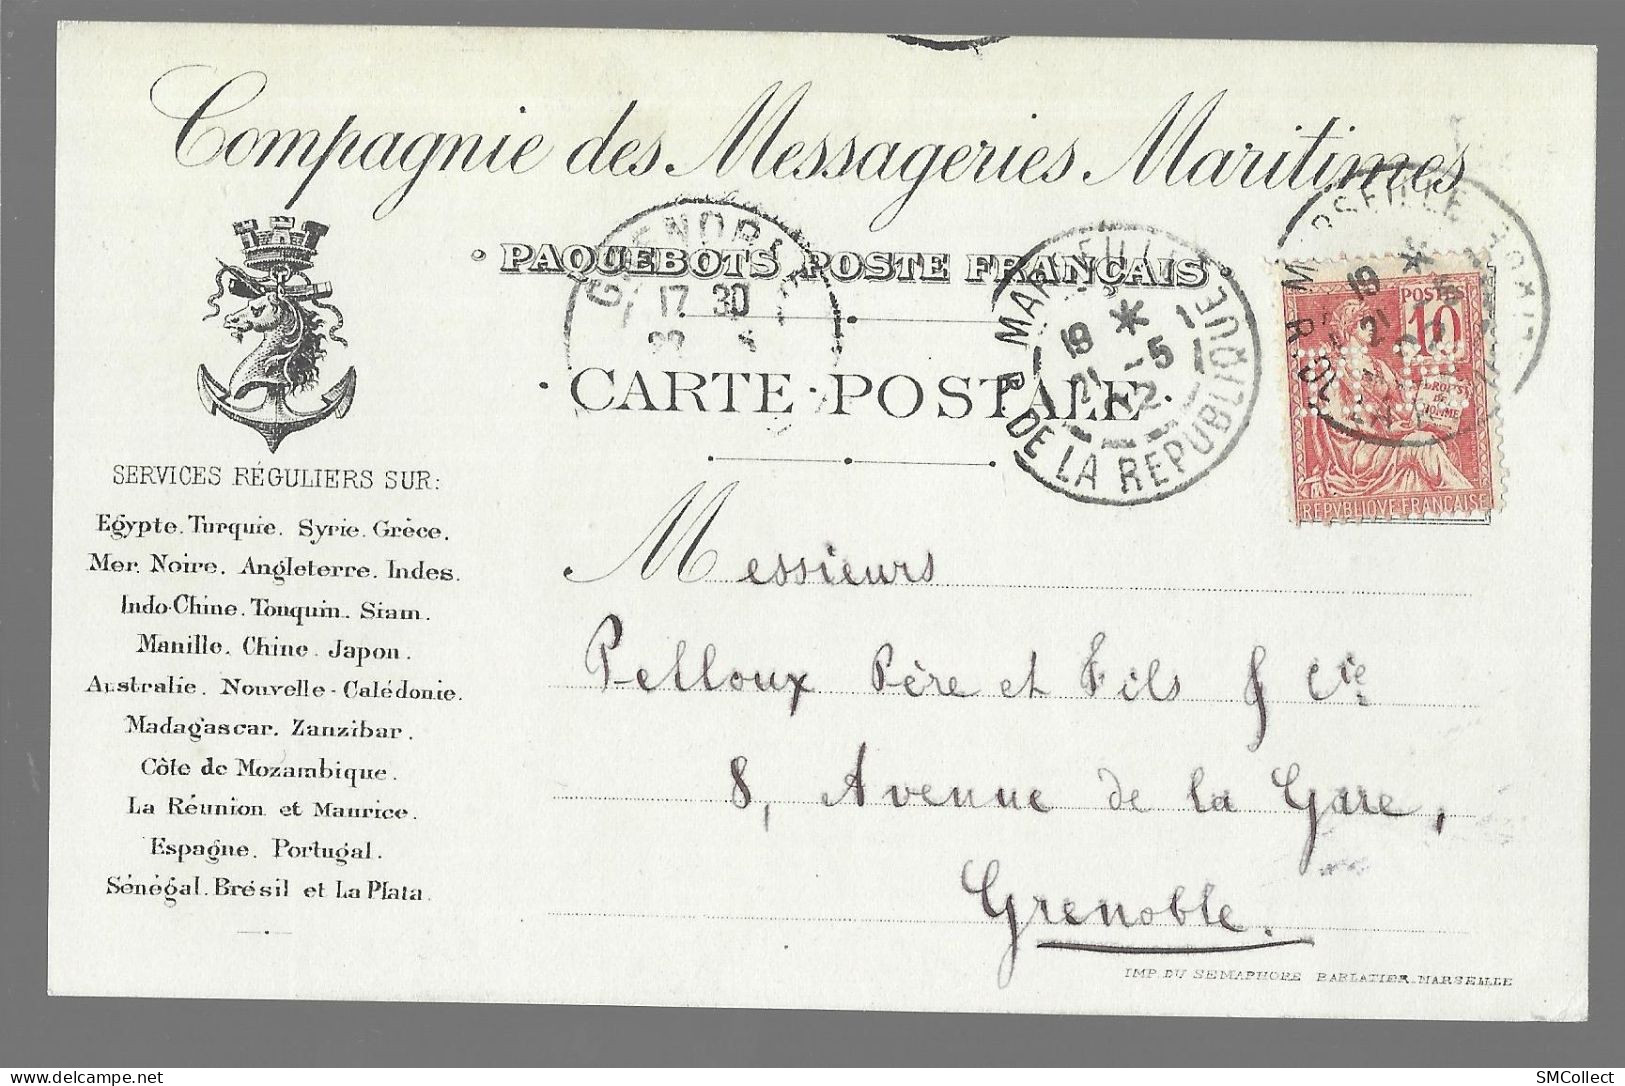 Carte Postale De La Compagnie Des Messageries Maritime, Paquebots Poste Français (13649) - Dampfer